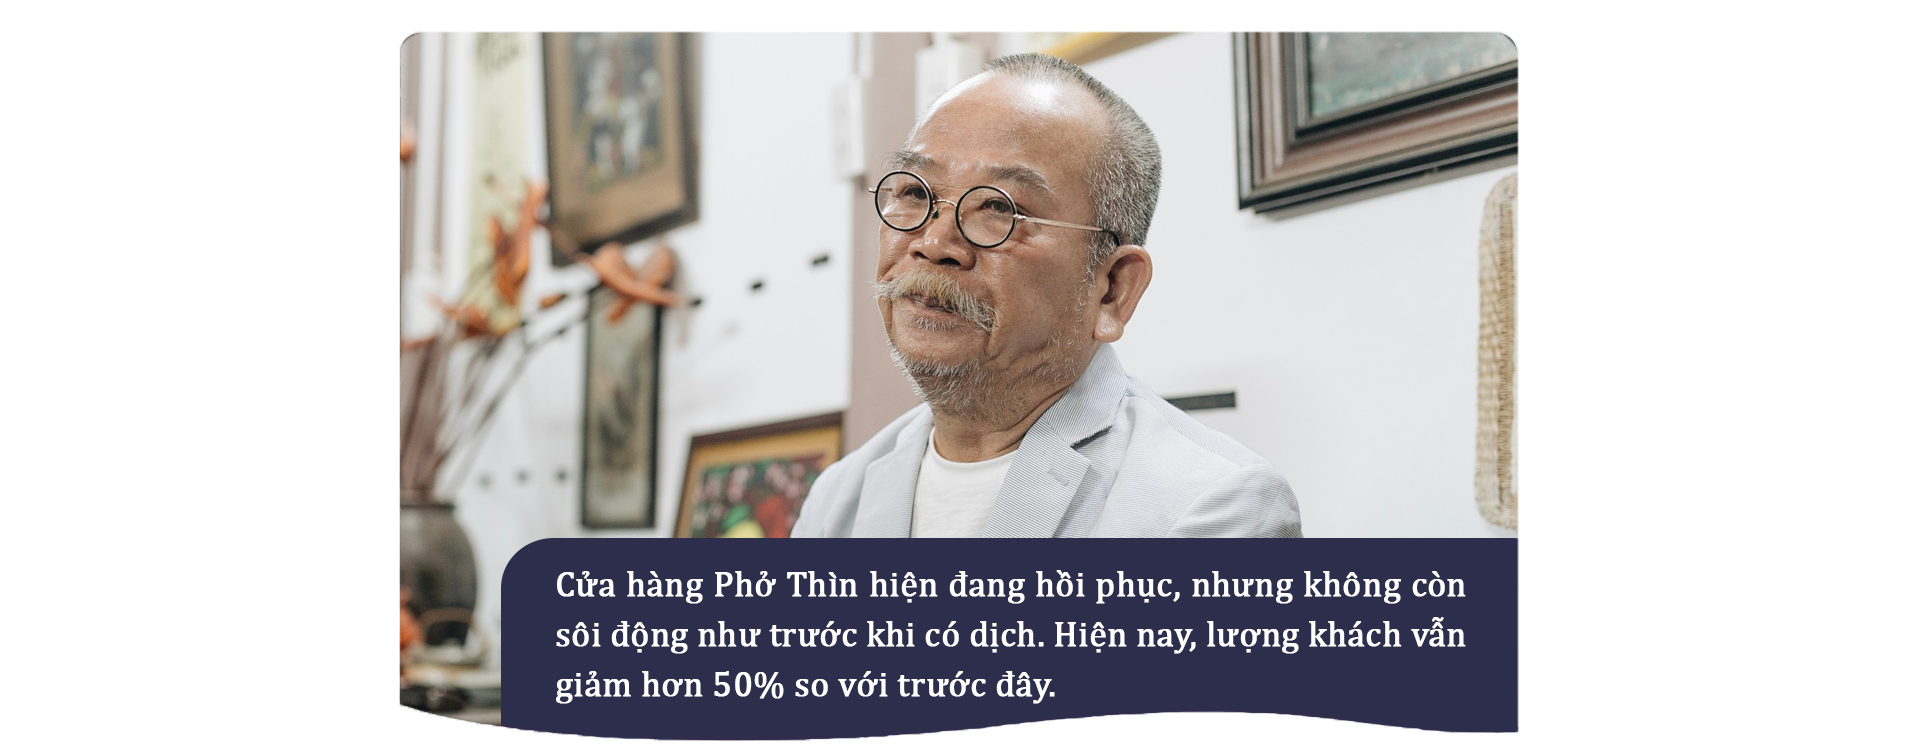 Ông chủ Phở Thìn, Hà Nội: Nhiều di sản ẩm thực của chúng ta đã biến mất vĩnh viễn - ảnh 3